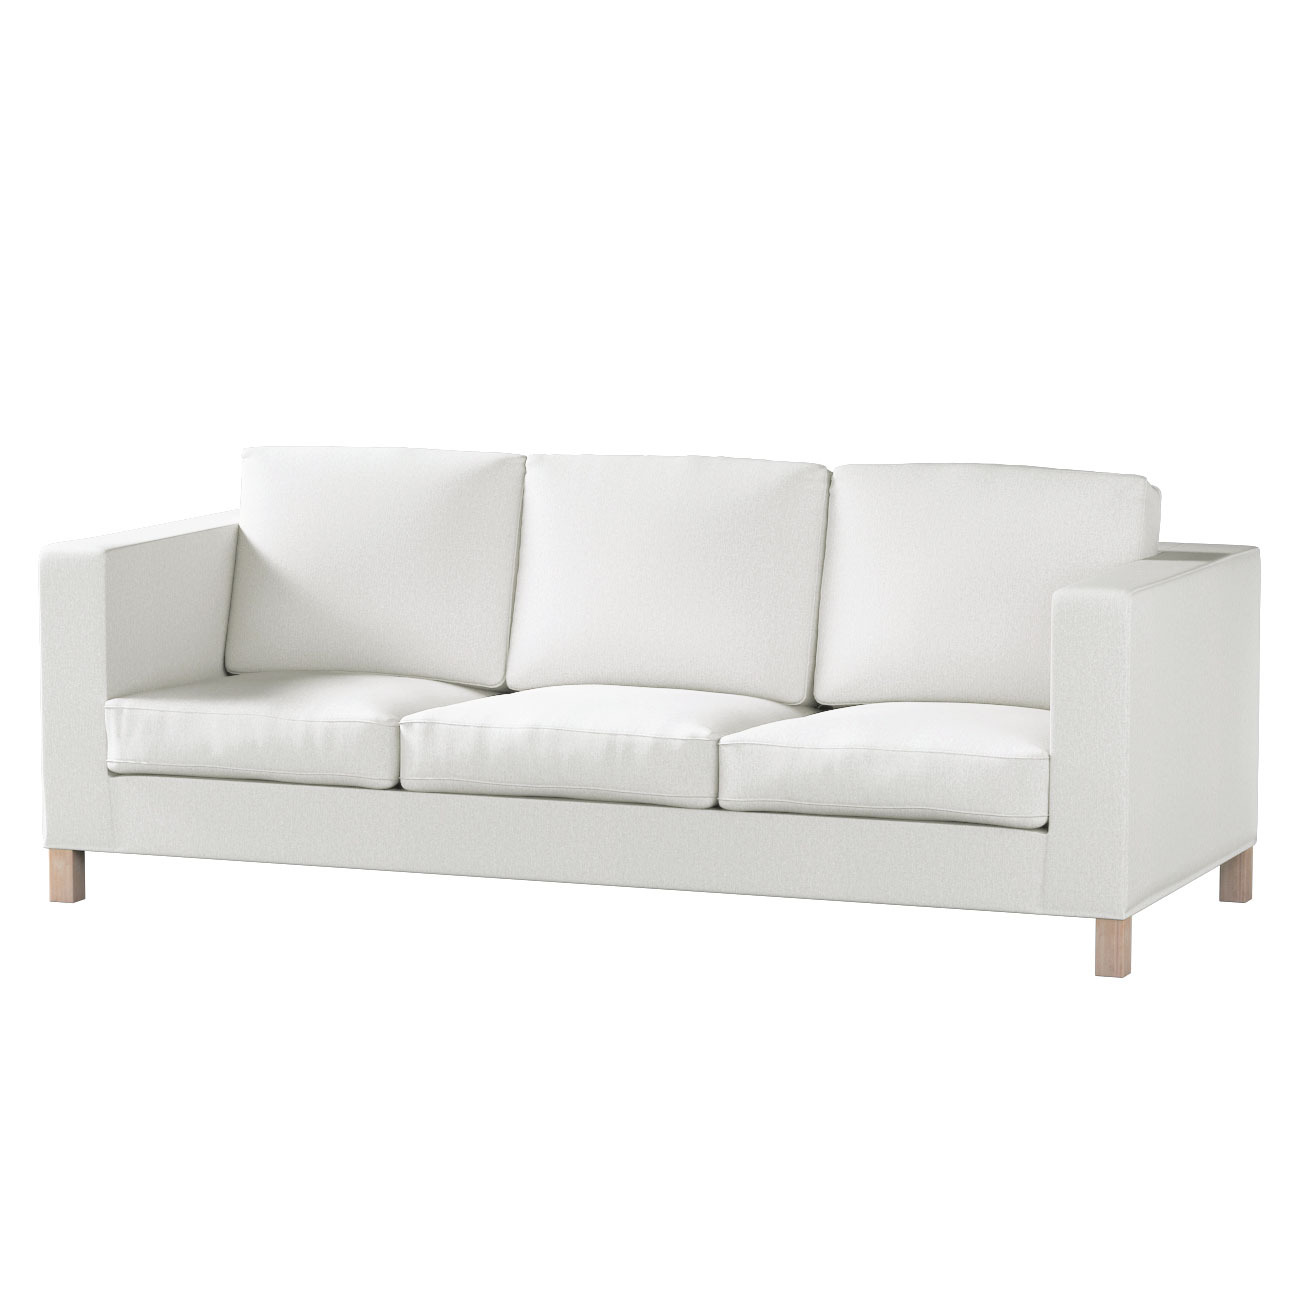 Bezug für Karlanda 3-Sitzer Sofa nicht ausklappbar, kurz, creme, Bezug für günstig online kaufen